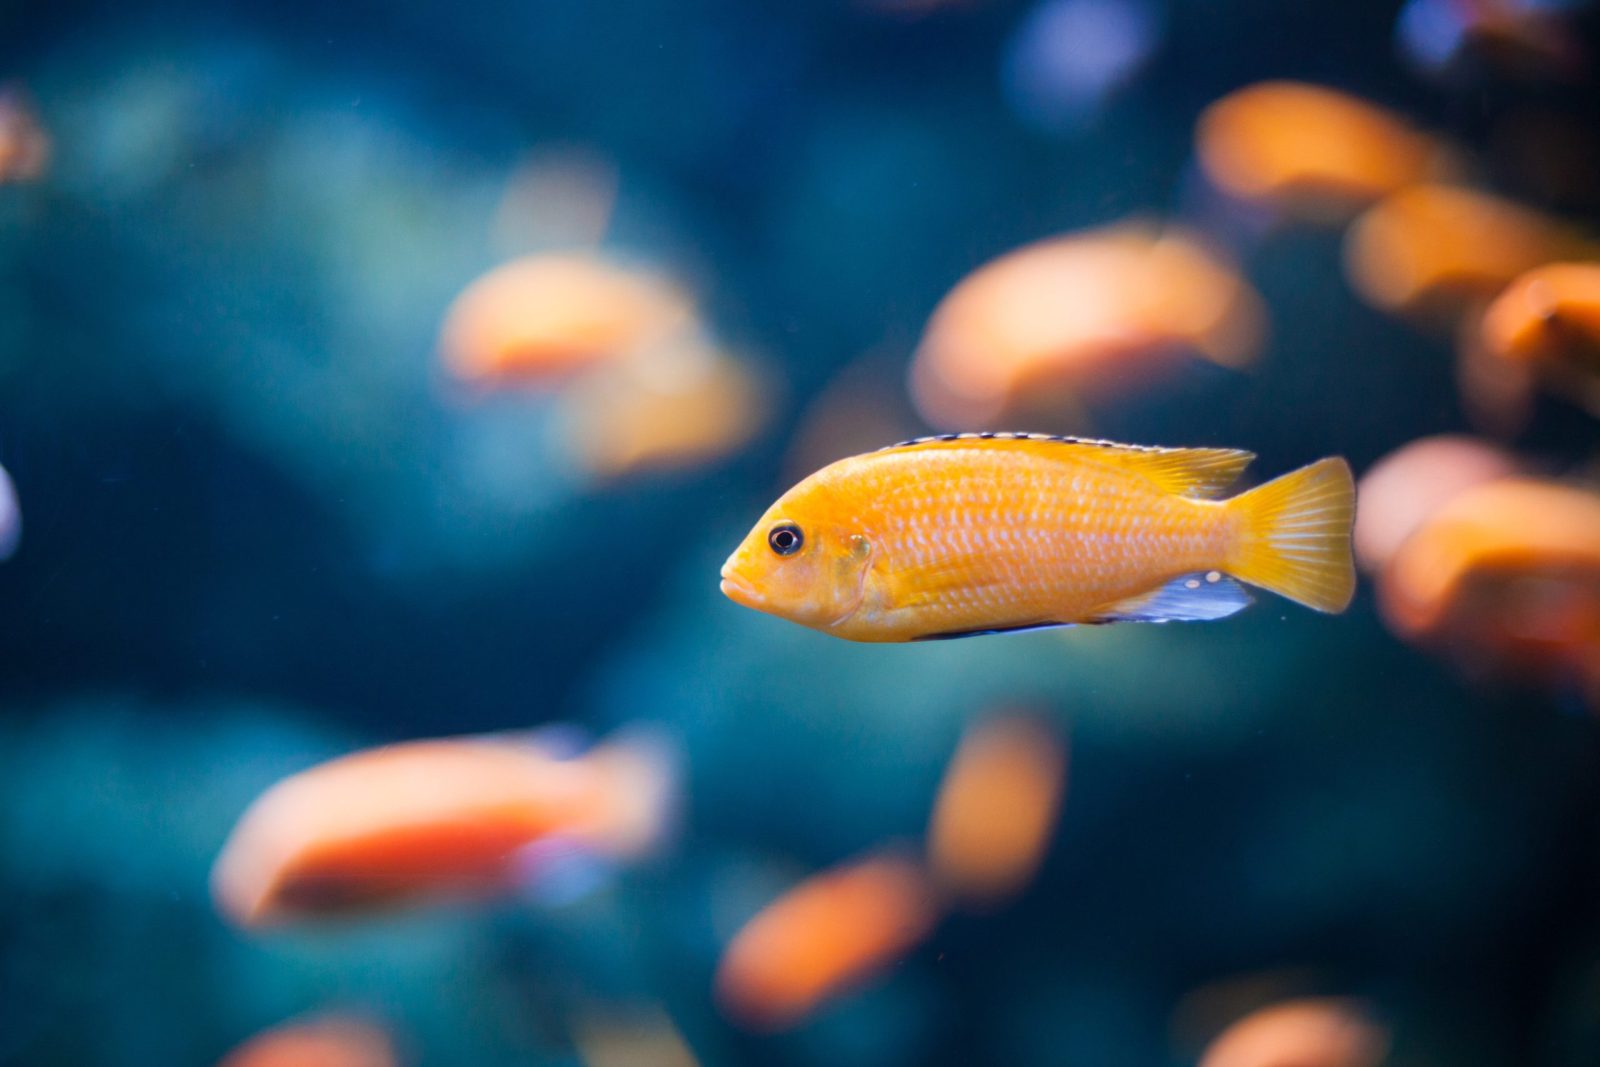 Orange fish in a fish tank